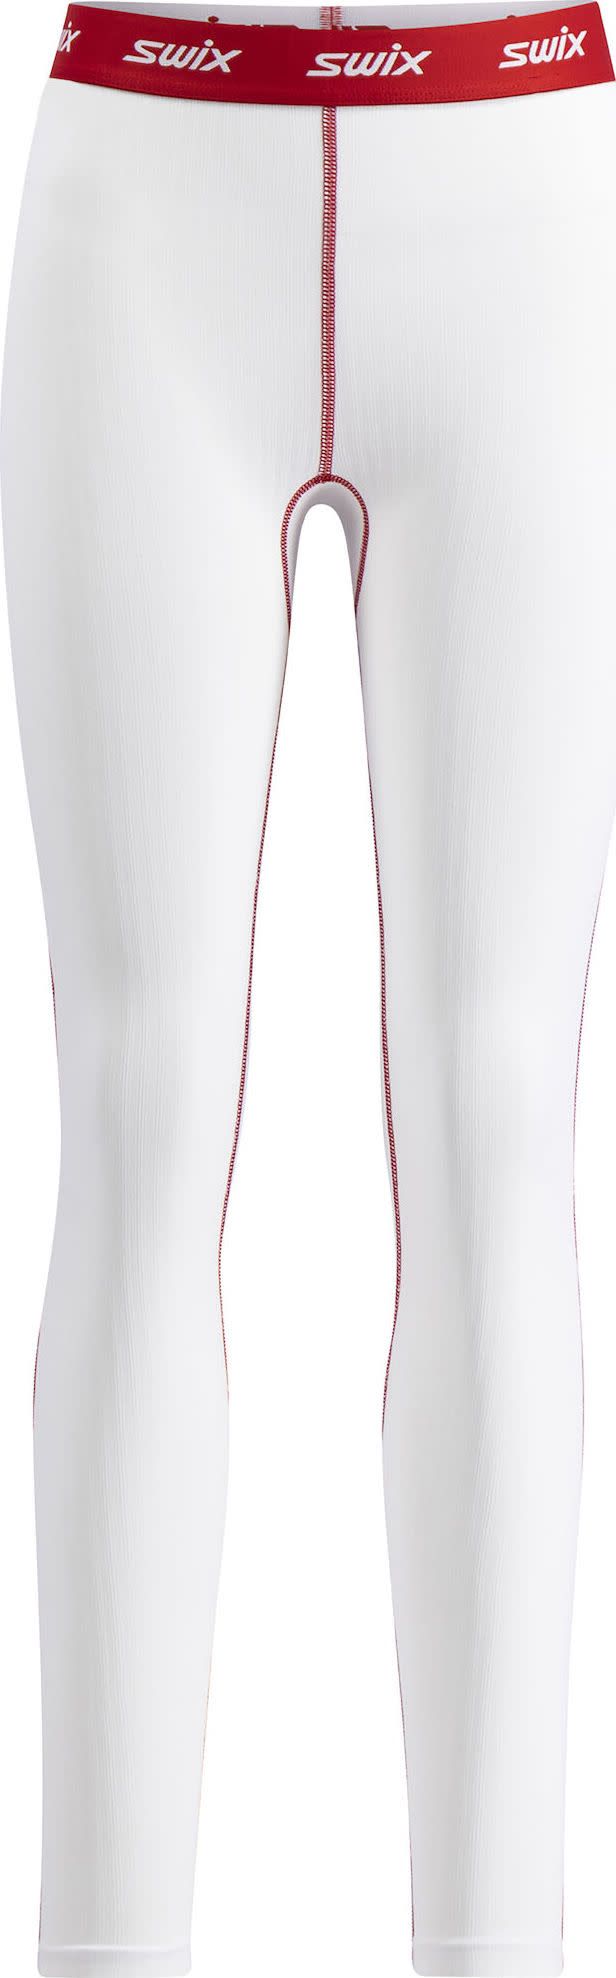 Women's RaceX Classic Pants Bright White/Swix Red Swix